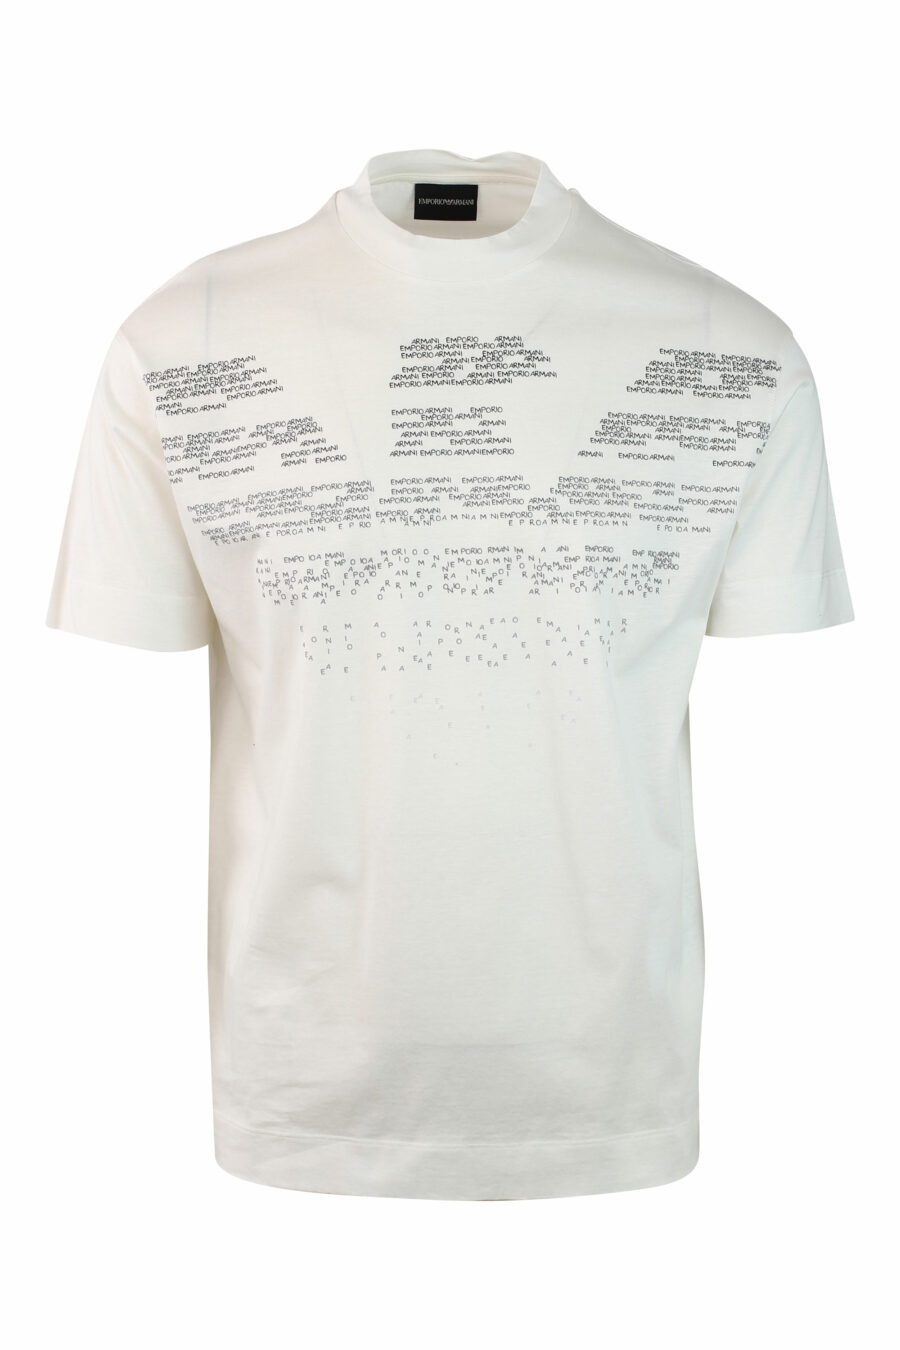 Camiseta blanca con maxilogo águila degradé - IMG 0139